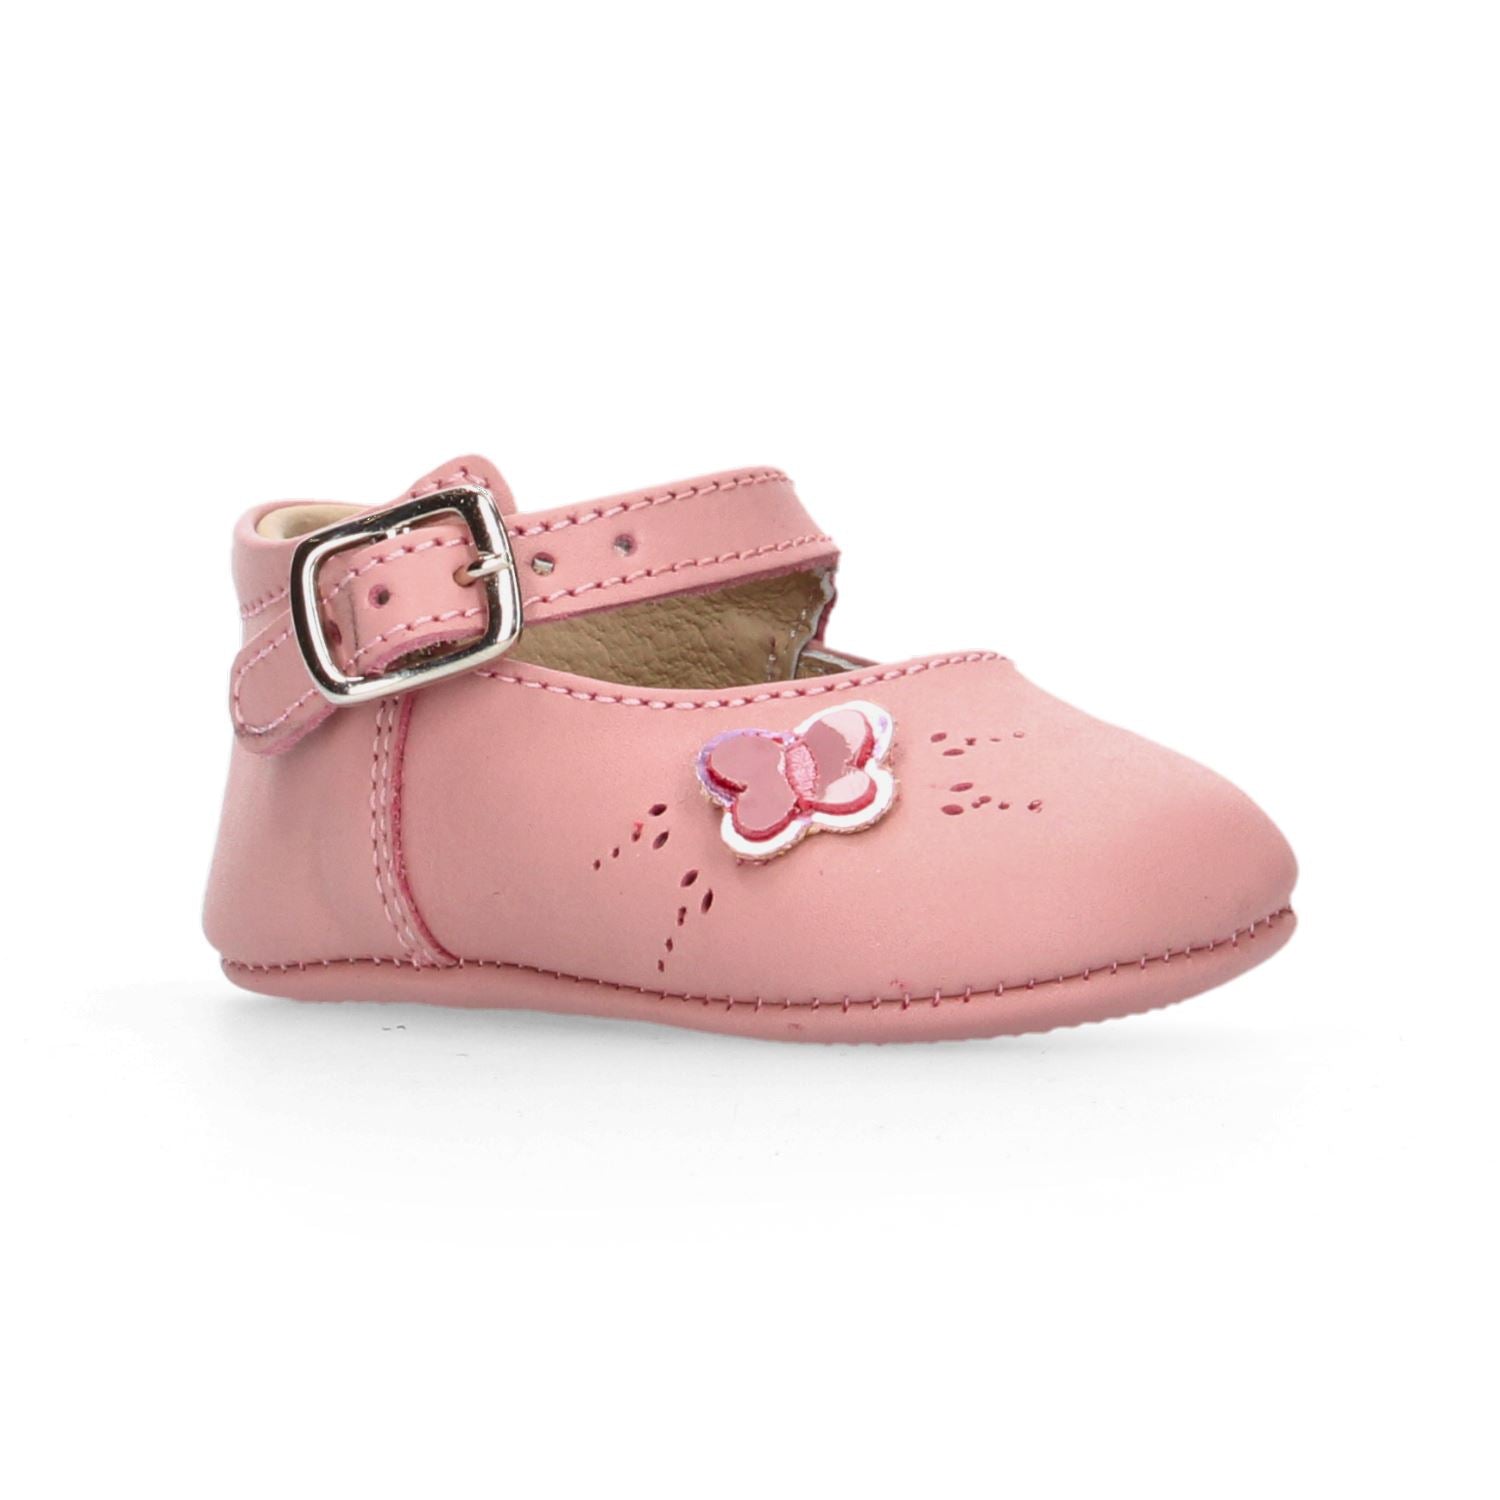 Zapato Casual Mini burbujas para Niña 23-387-N14 Rosa [MNB206] División_Calzado MINI BURBUJAS 10 Rosa 